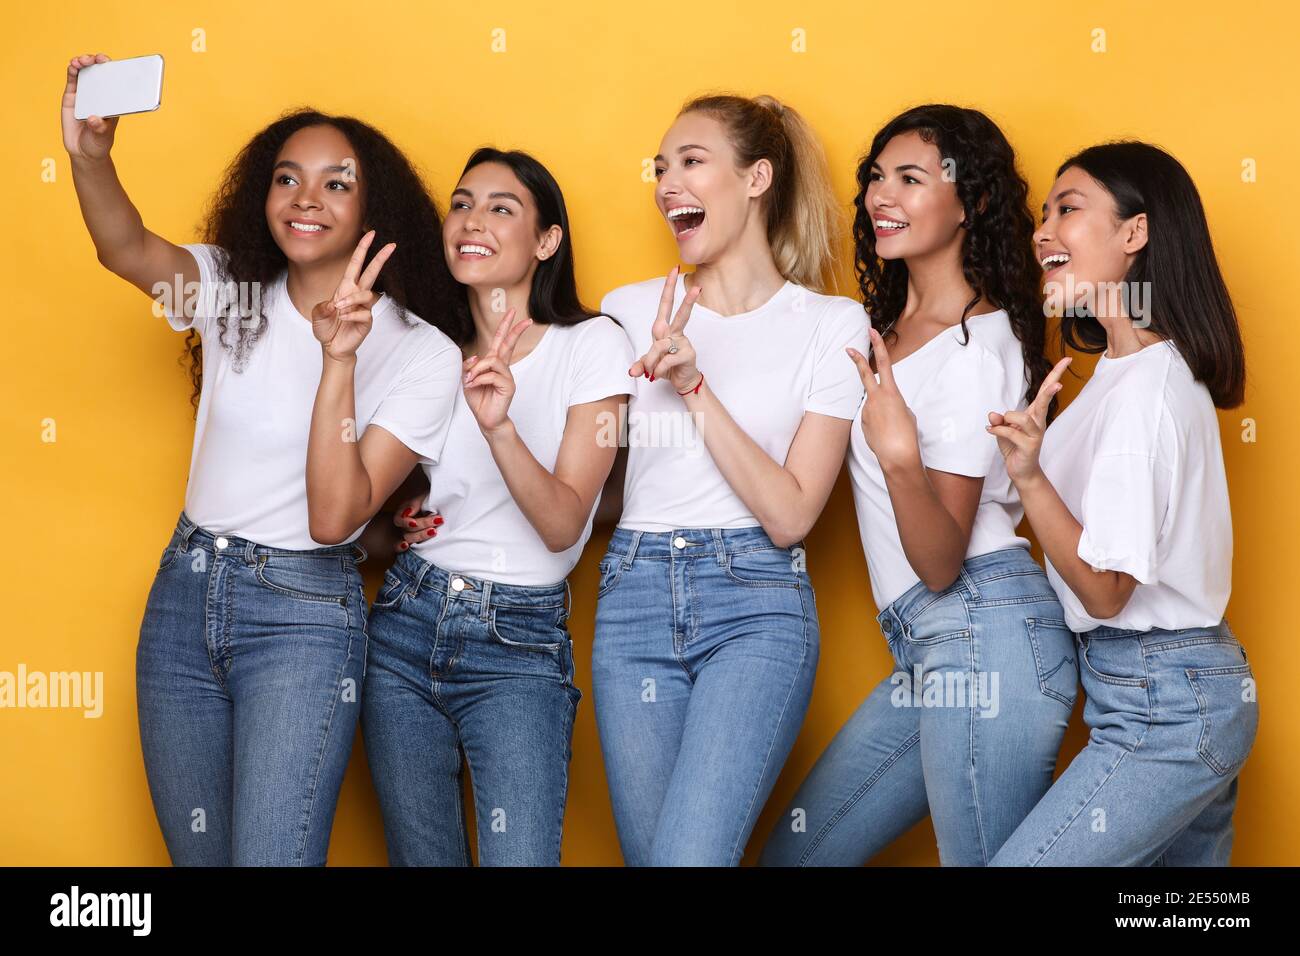 Multiculturel Dames faire Selfie au téléphone gestante V-Sign, fond jaune Banque D'Images